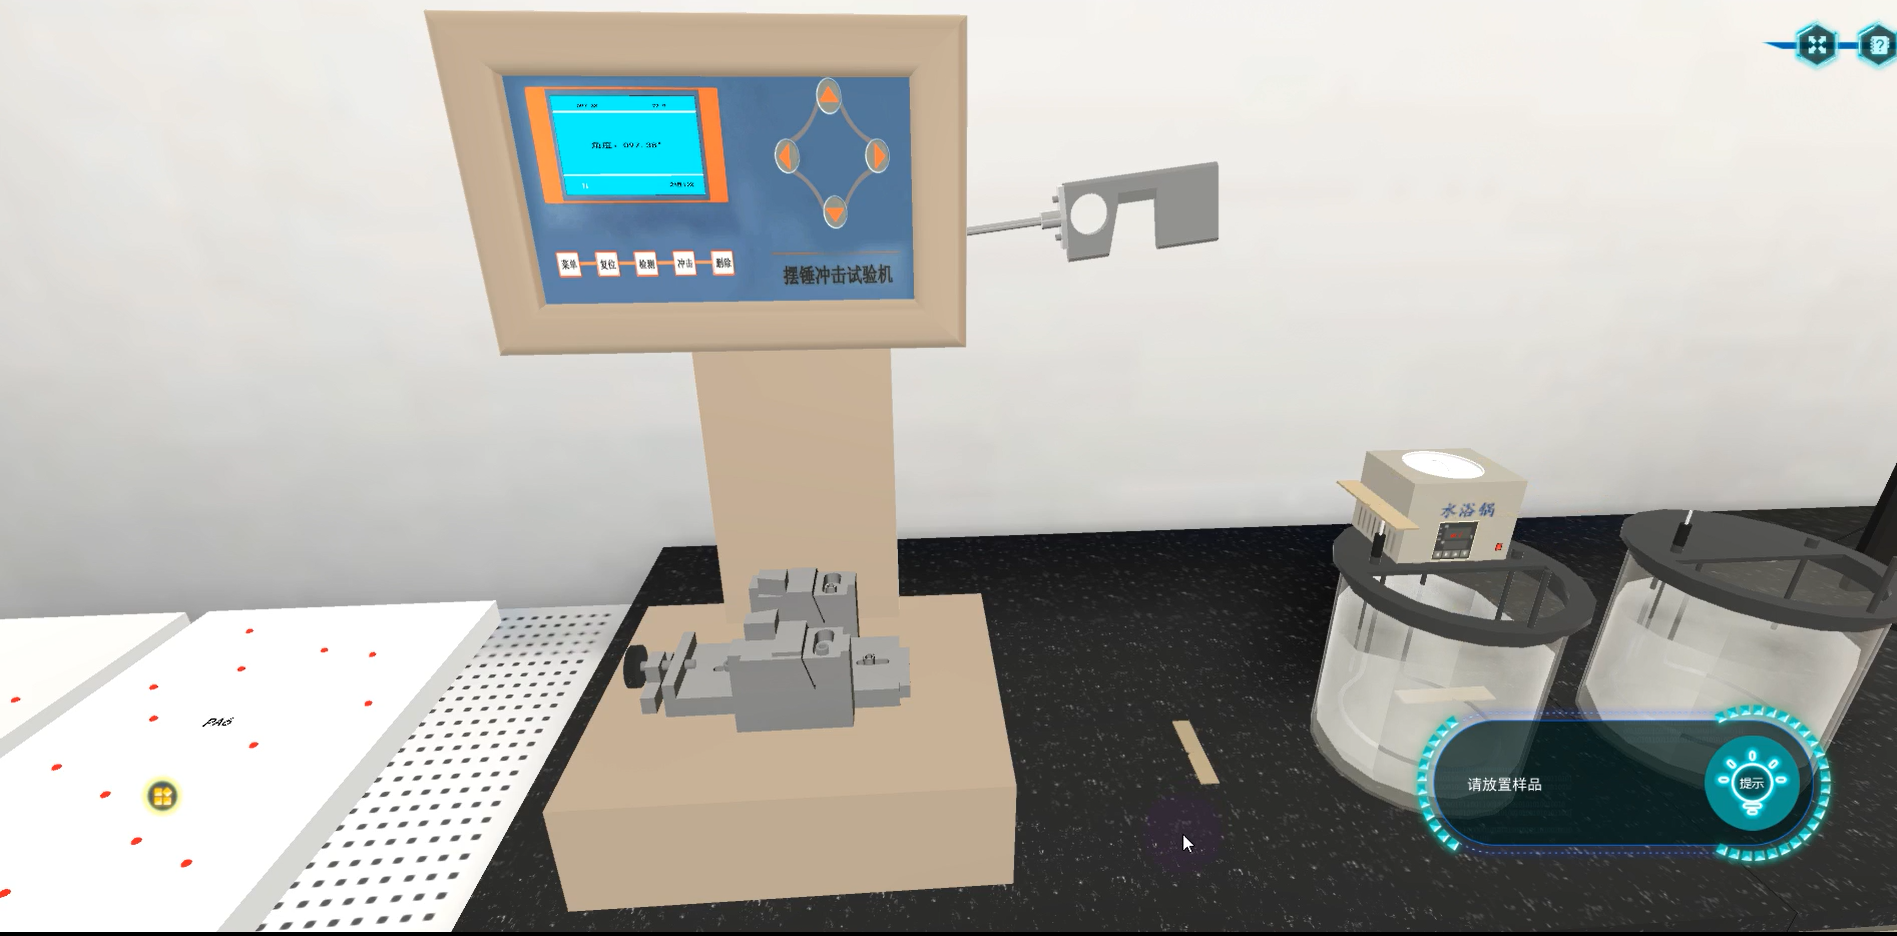 聚合物邵氏硬度、冲击和熔体流动速率测试虚拟仿真实验